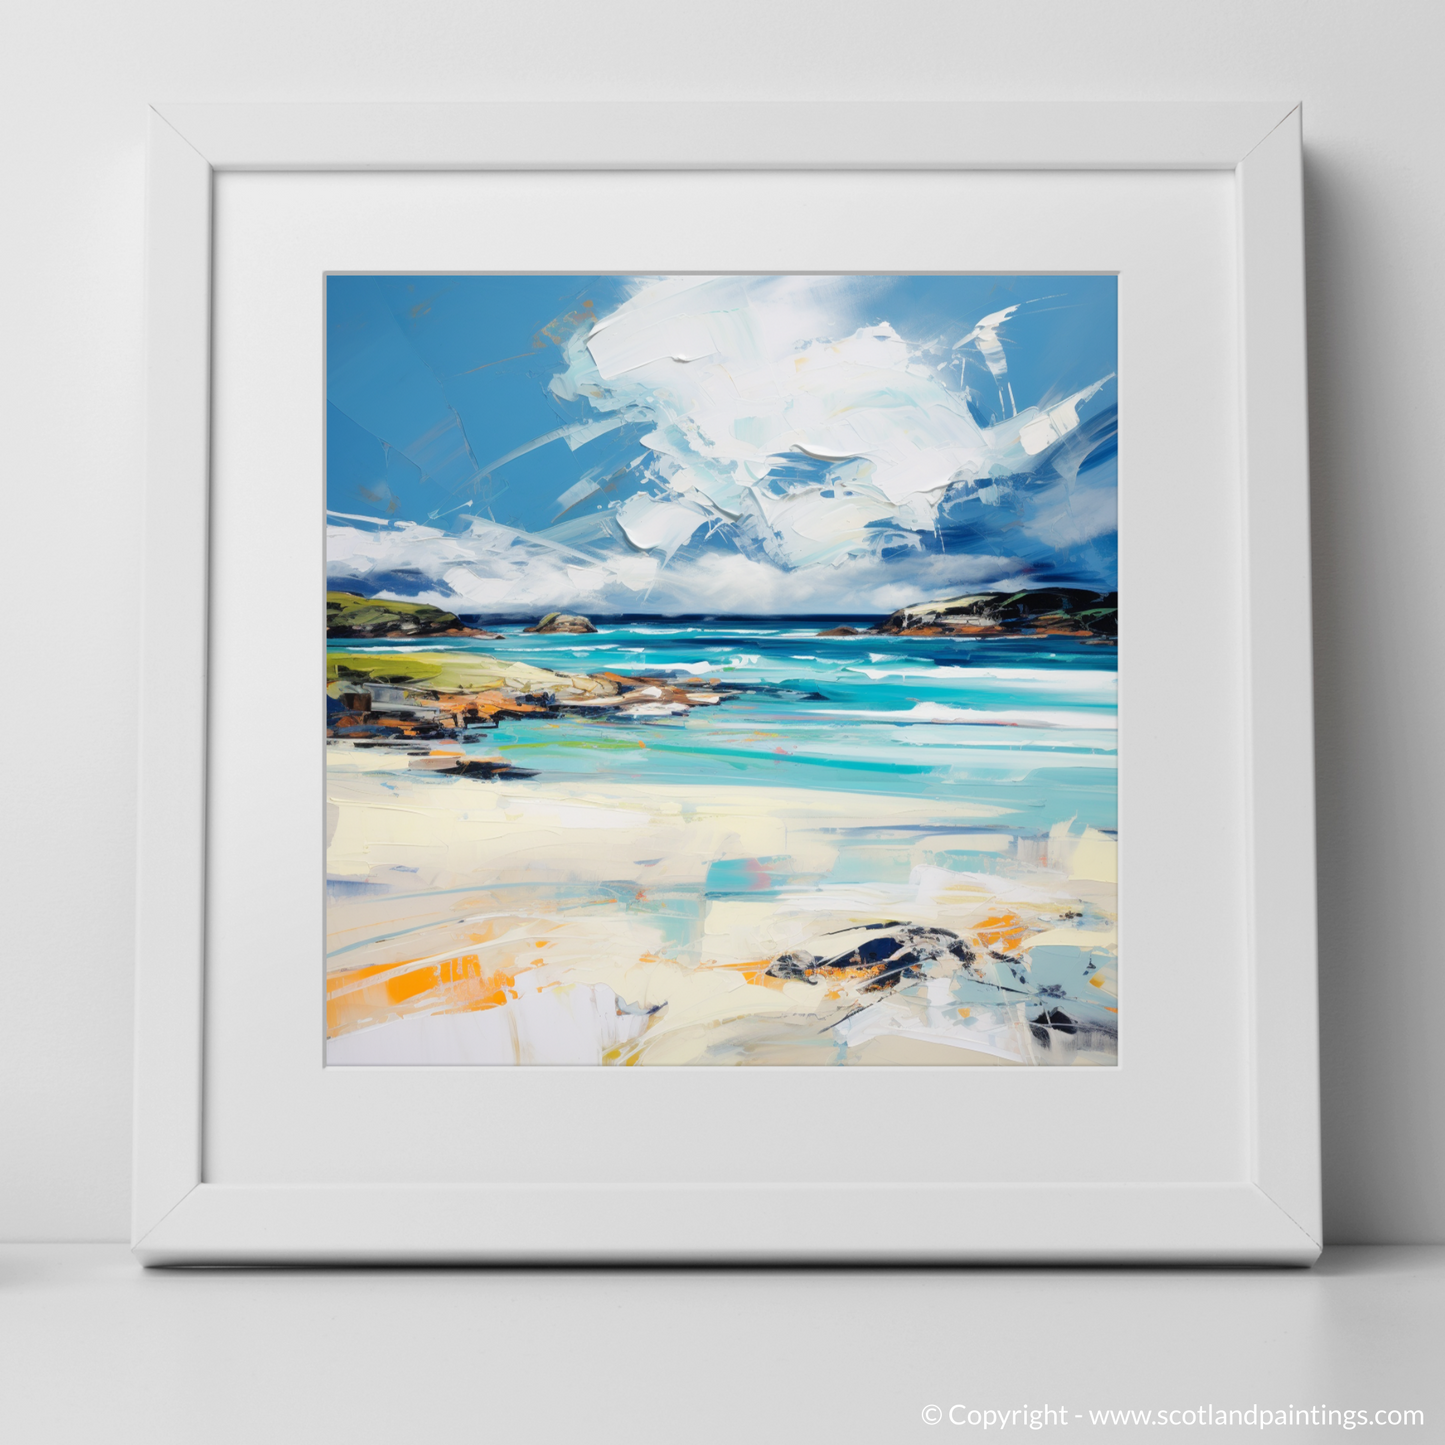 Art Print of Camusdarach Beach with a white frame